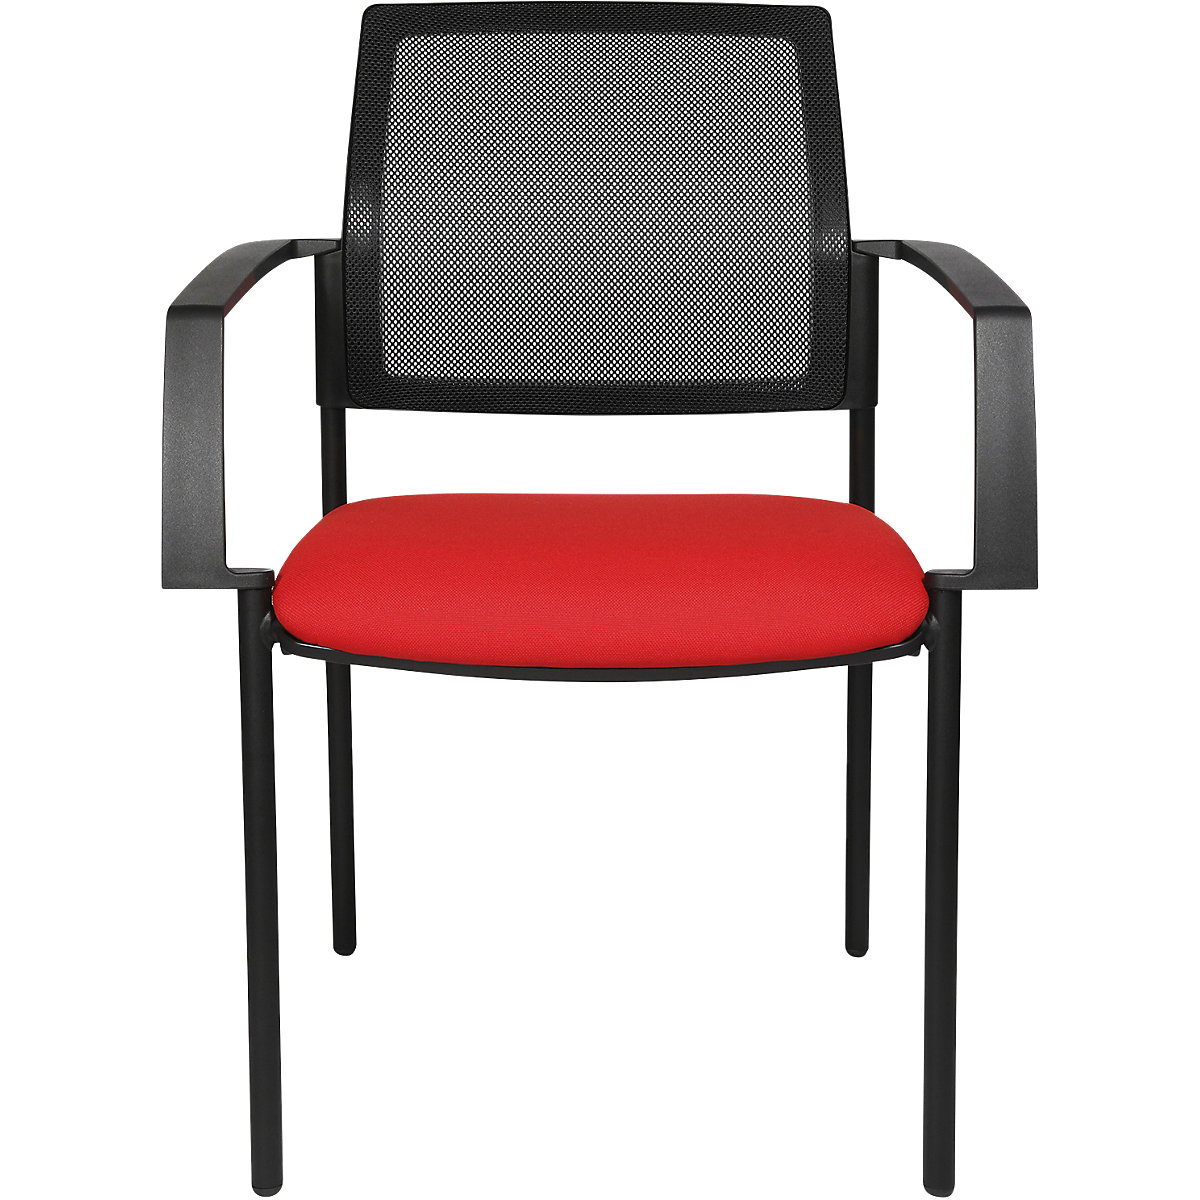 Stohovacia stolička zo sieťoviny – Topstar